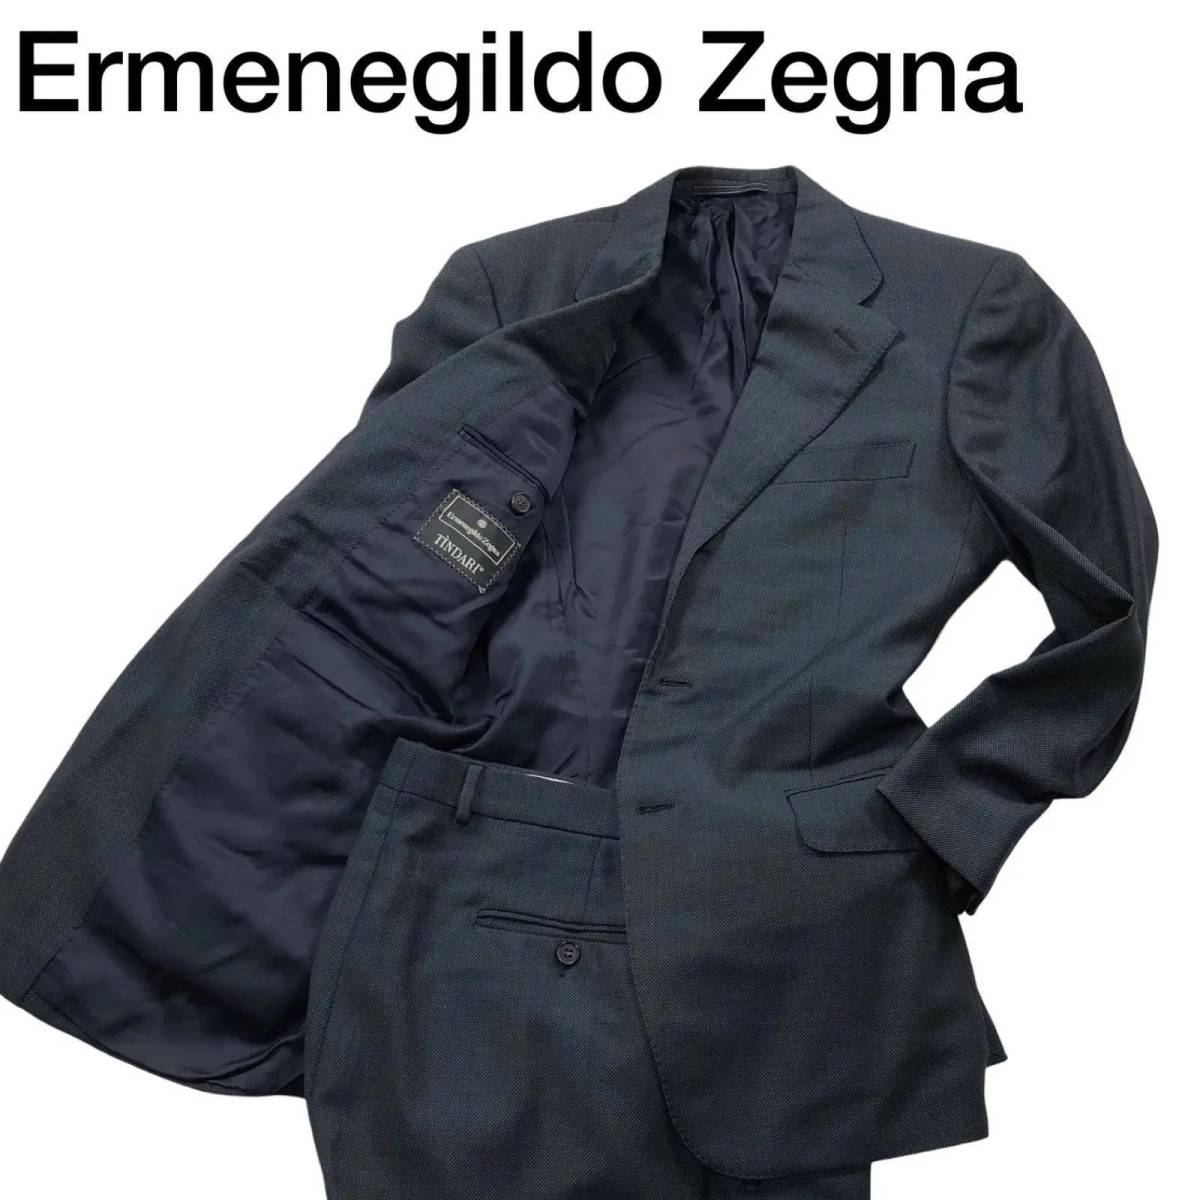 Ermenegildo Zegna エルメネジルドゼニア TINDARI スーツ セットアップ